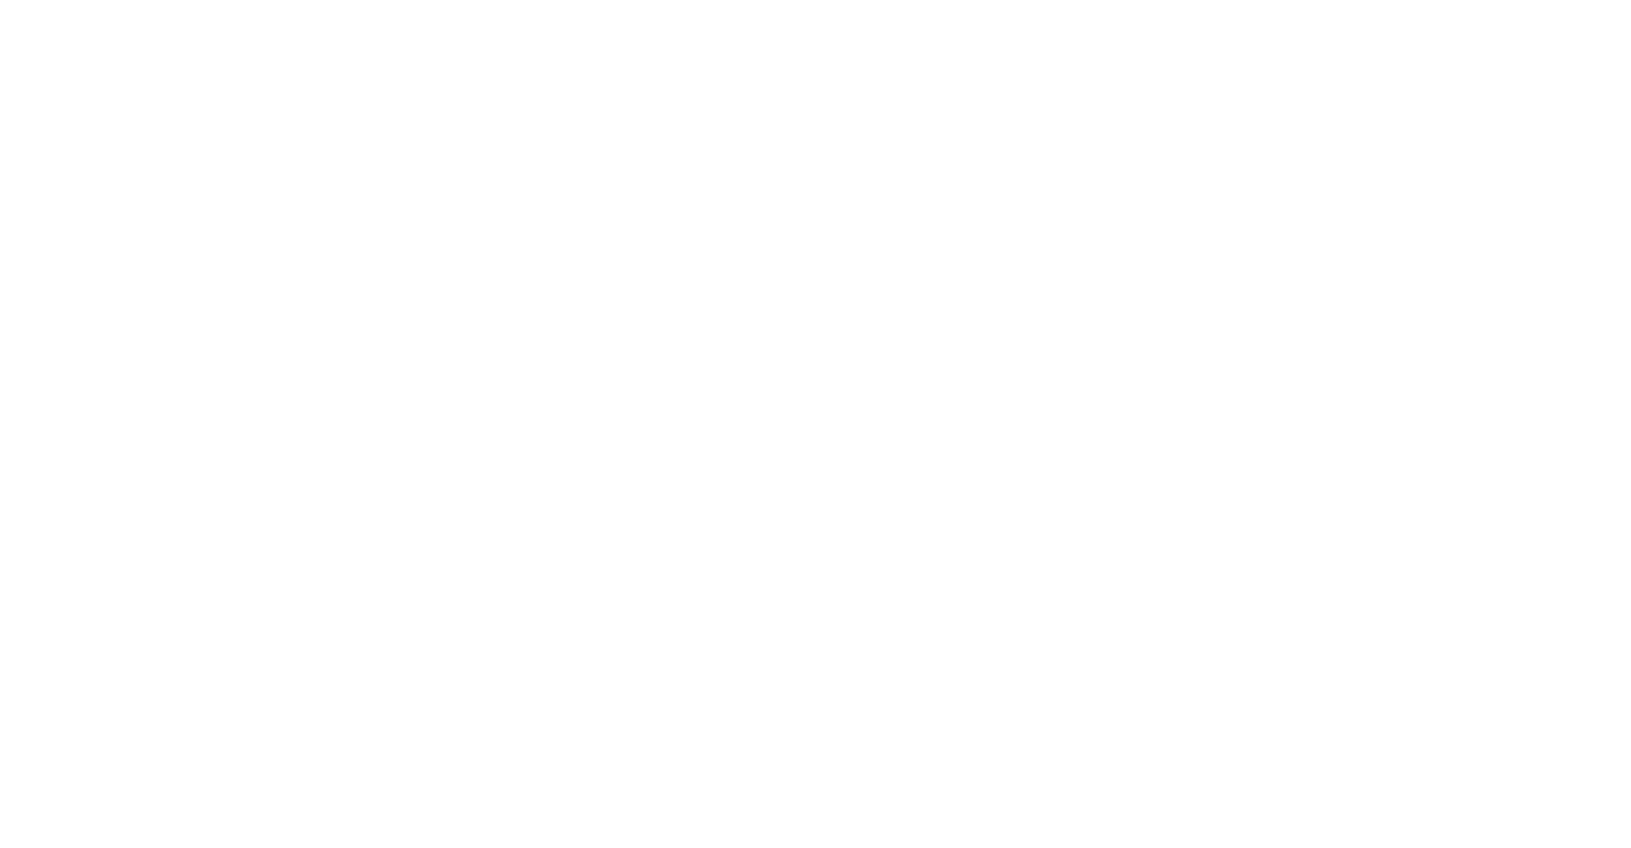 RiskTech100 2022 FIS Overall Winner